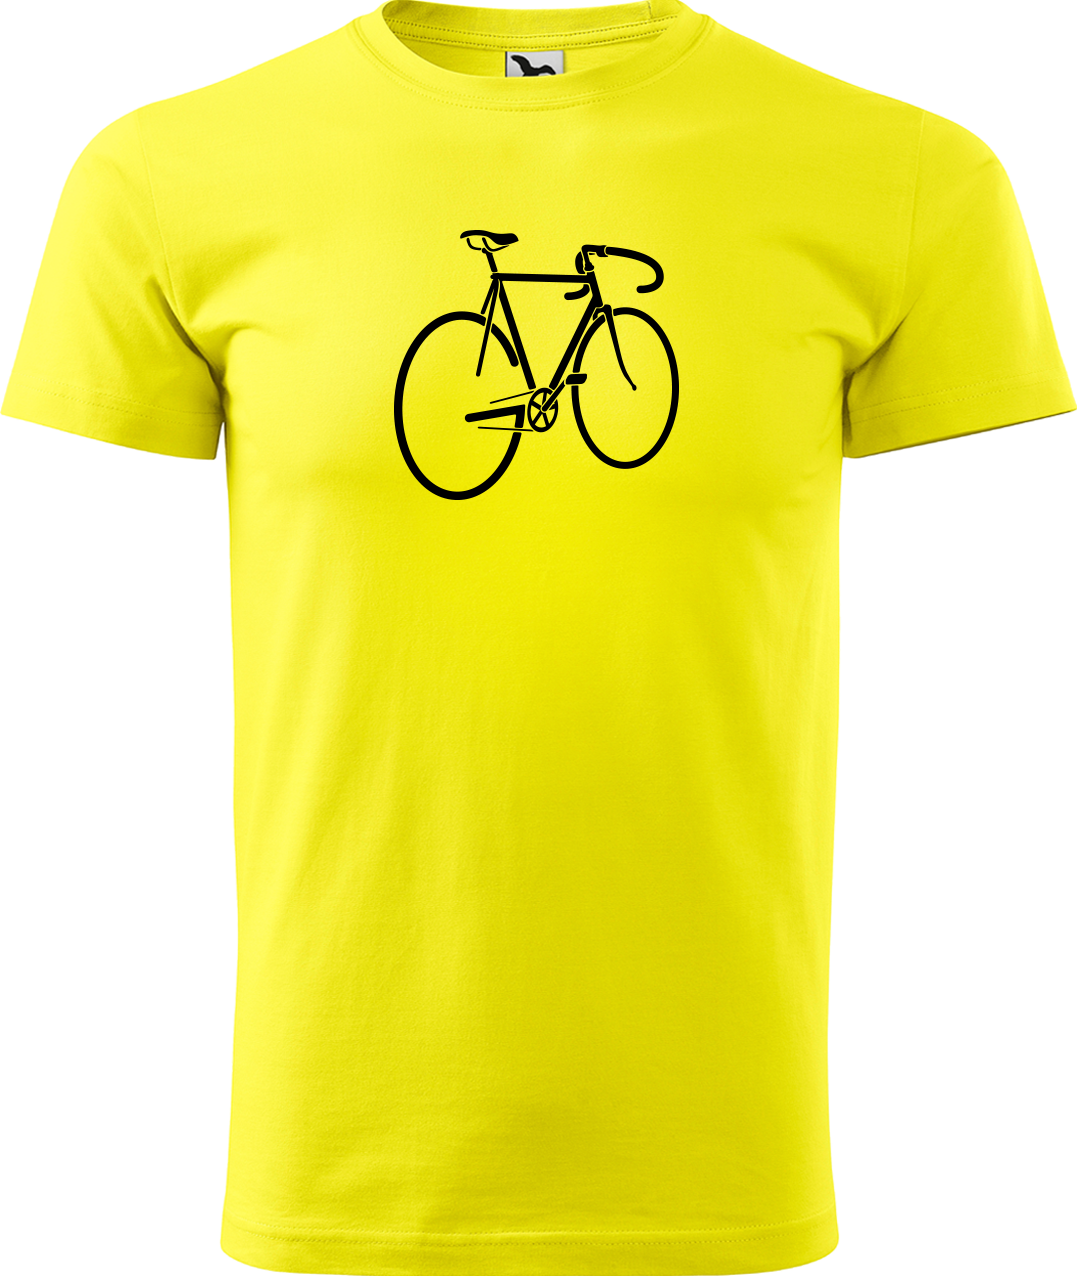 Pánské tričko s kolem - Pánské kolo Velikost: 3XL, Barva: Žlutá (04)